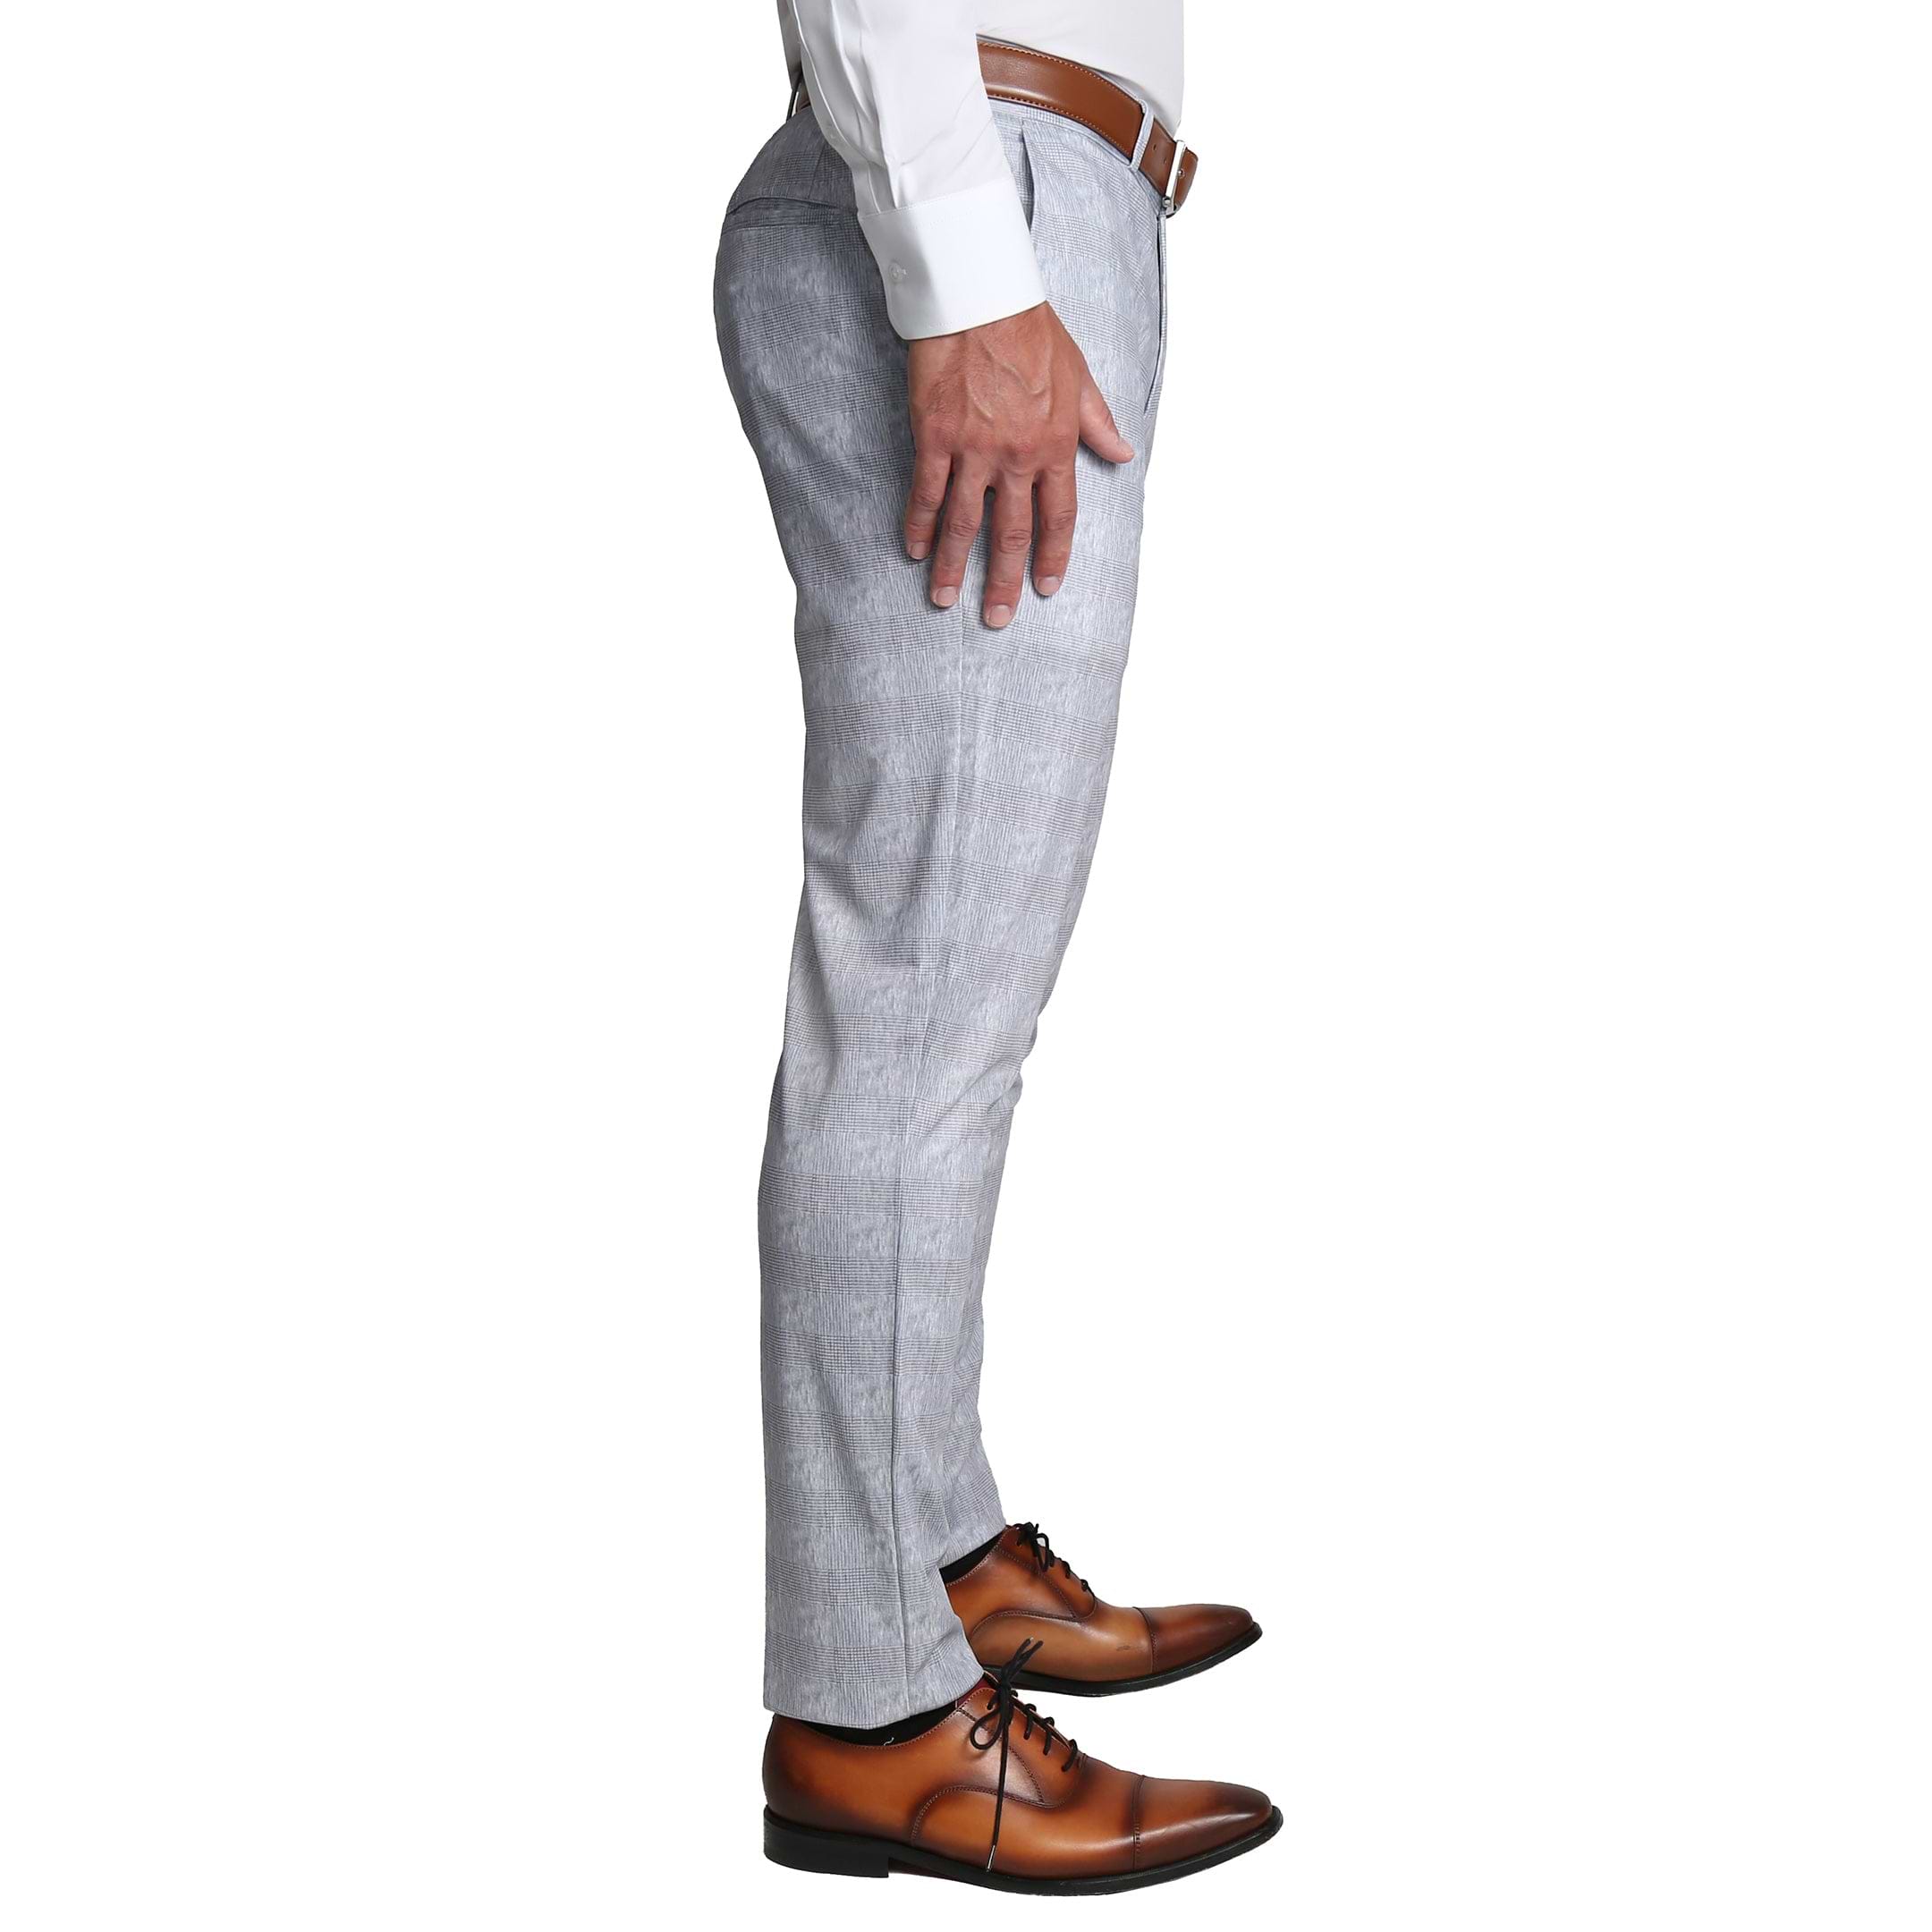 Athletic Fit Stretch Suit - Light Grey Plaid